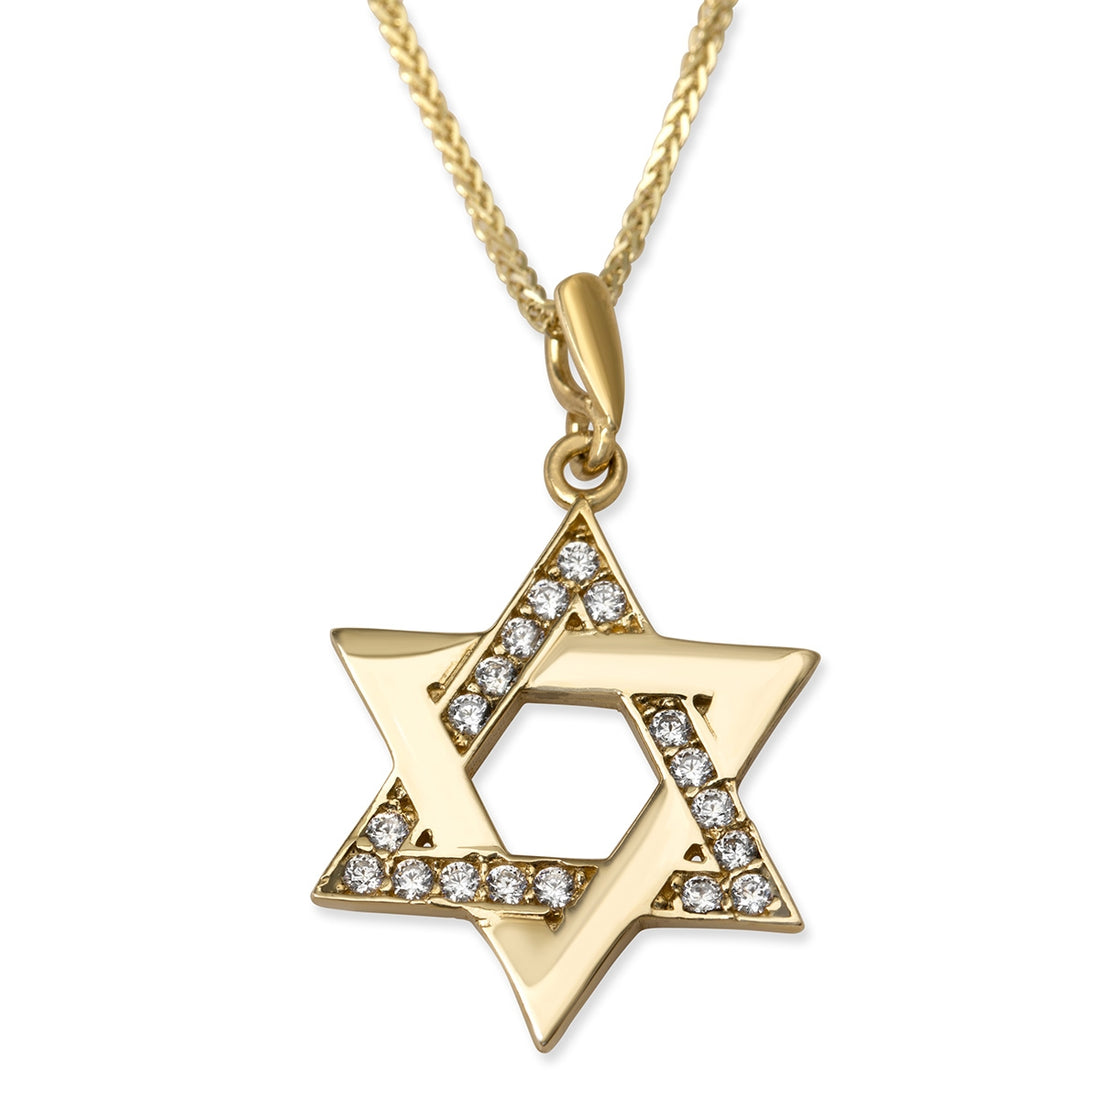 Gelin Star of David Necklace in 14K Gold – Gelin Diamond